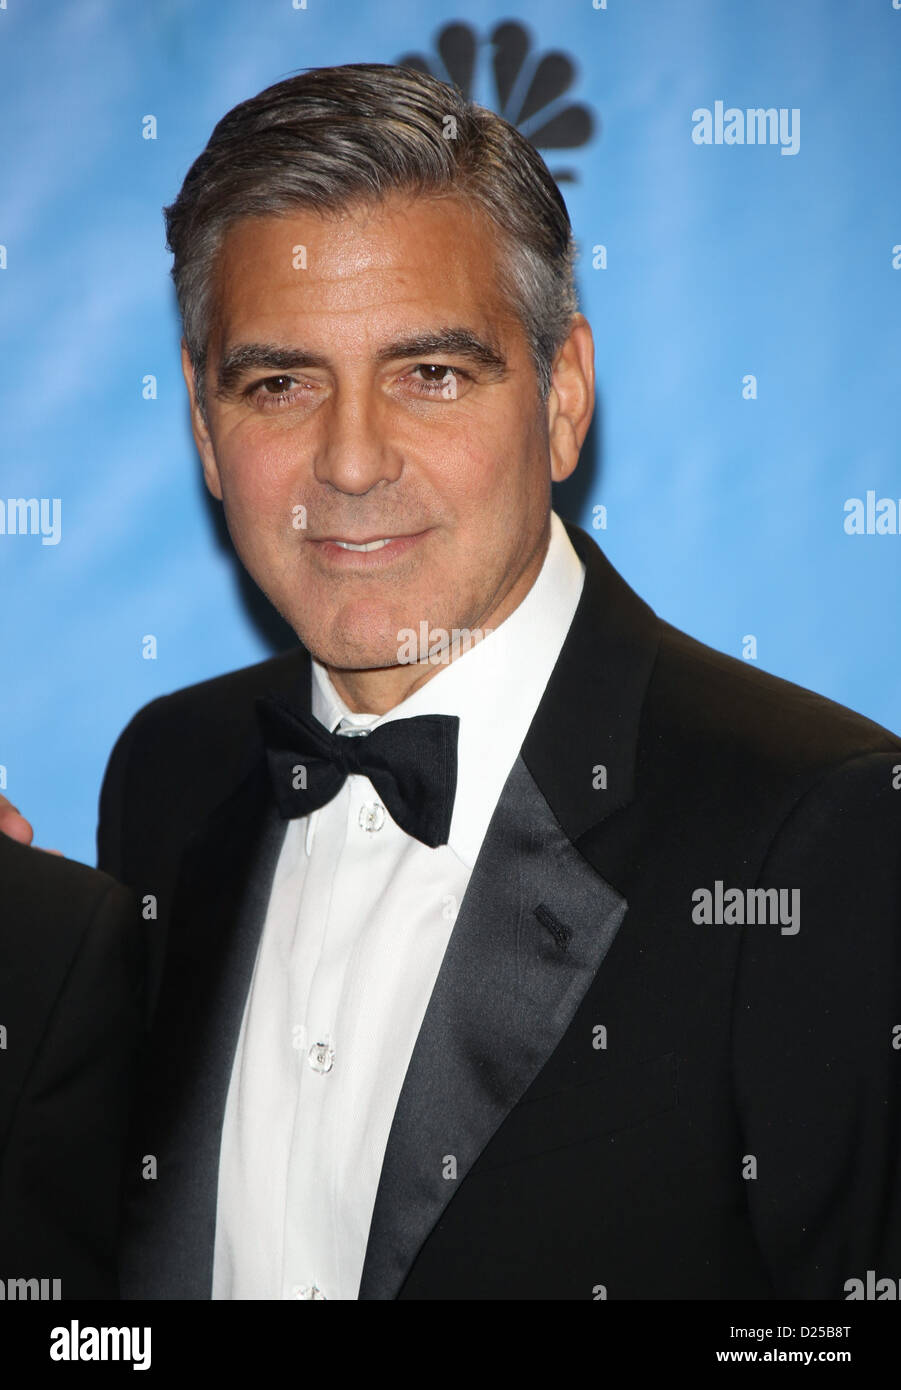 L'acteur américain / meilleur film co-producteur George Clooney pose dans la photo de presse de la 70e assemblée annuelle Golden Globe Awards présenté par la Hollywood Foreign Press Association (HFPA,, à l'hôtel Beverly Hilton à Beverly Hills, USA, le 13 janvier 2013. Photo : Hubert Boesl Banque D'Images